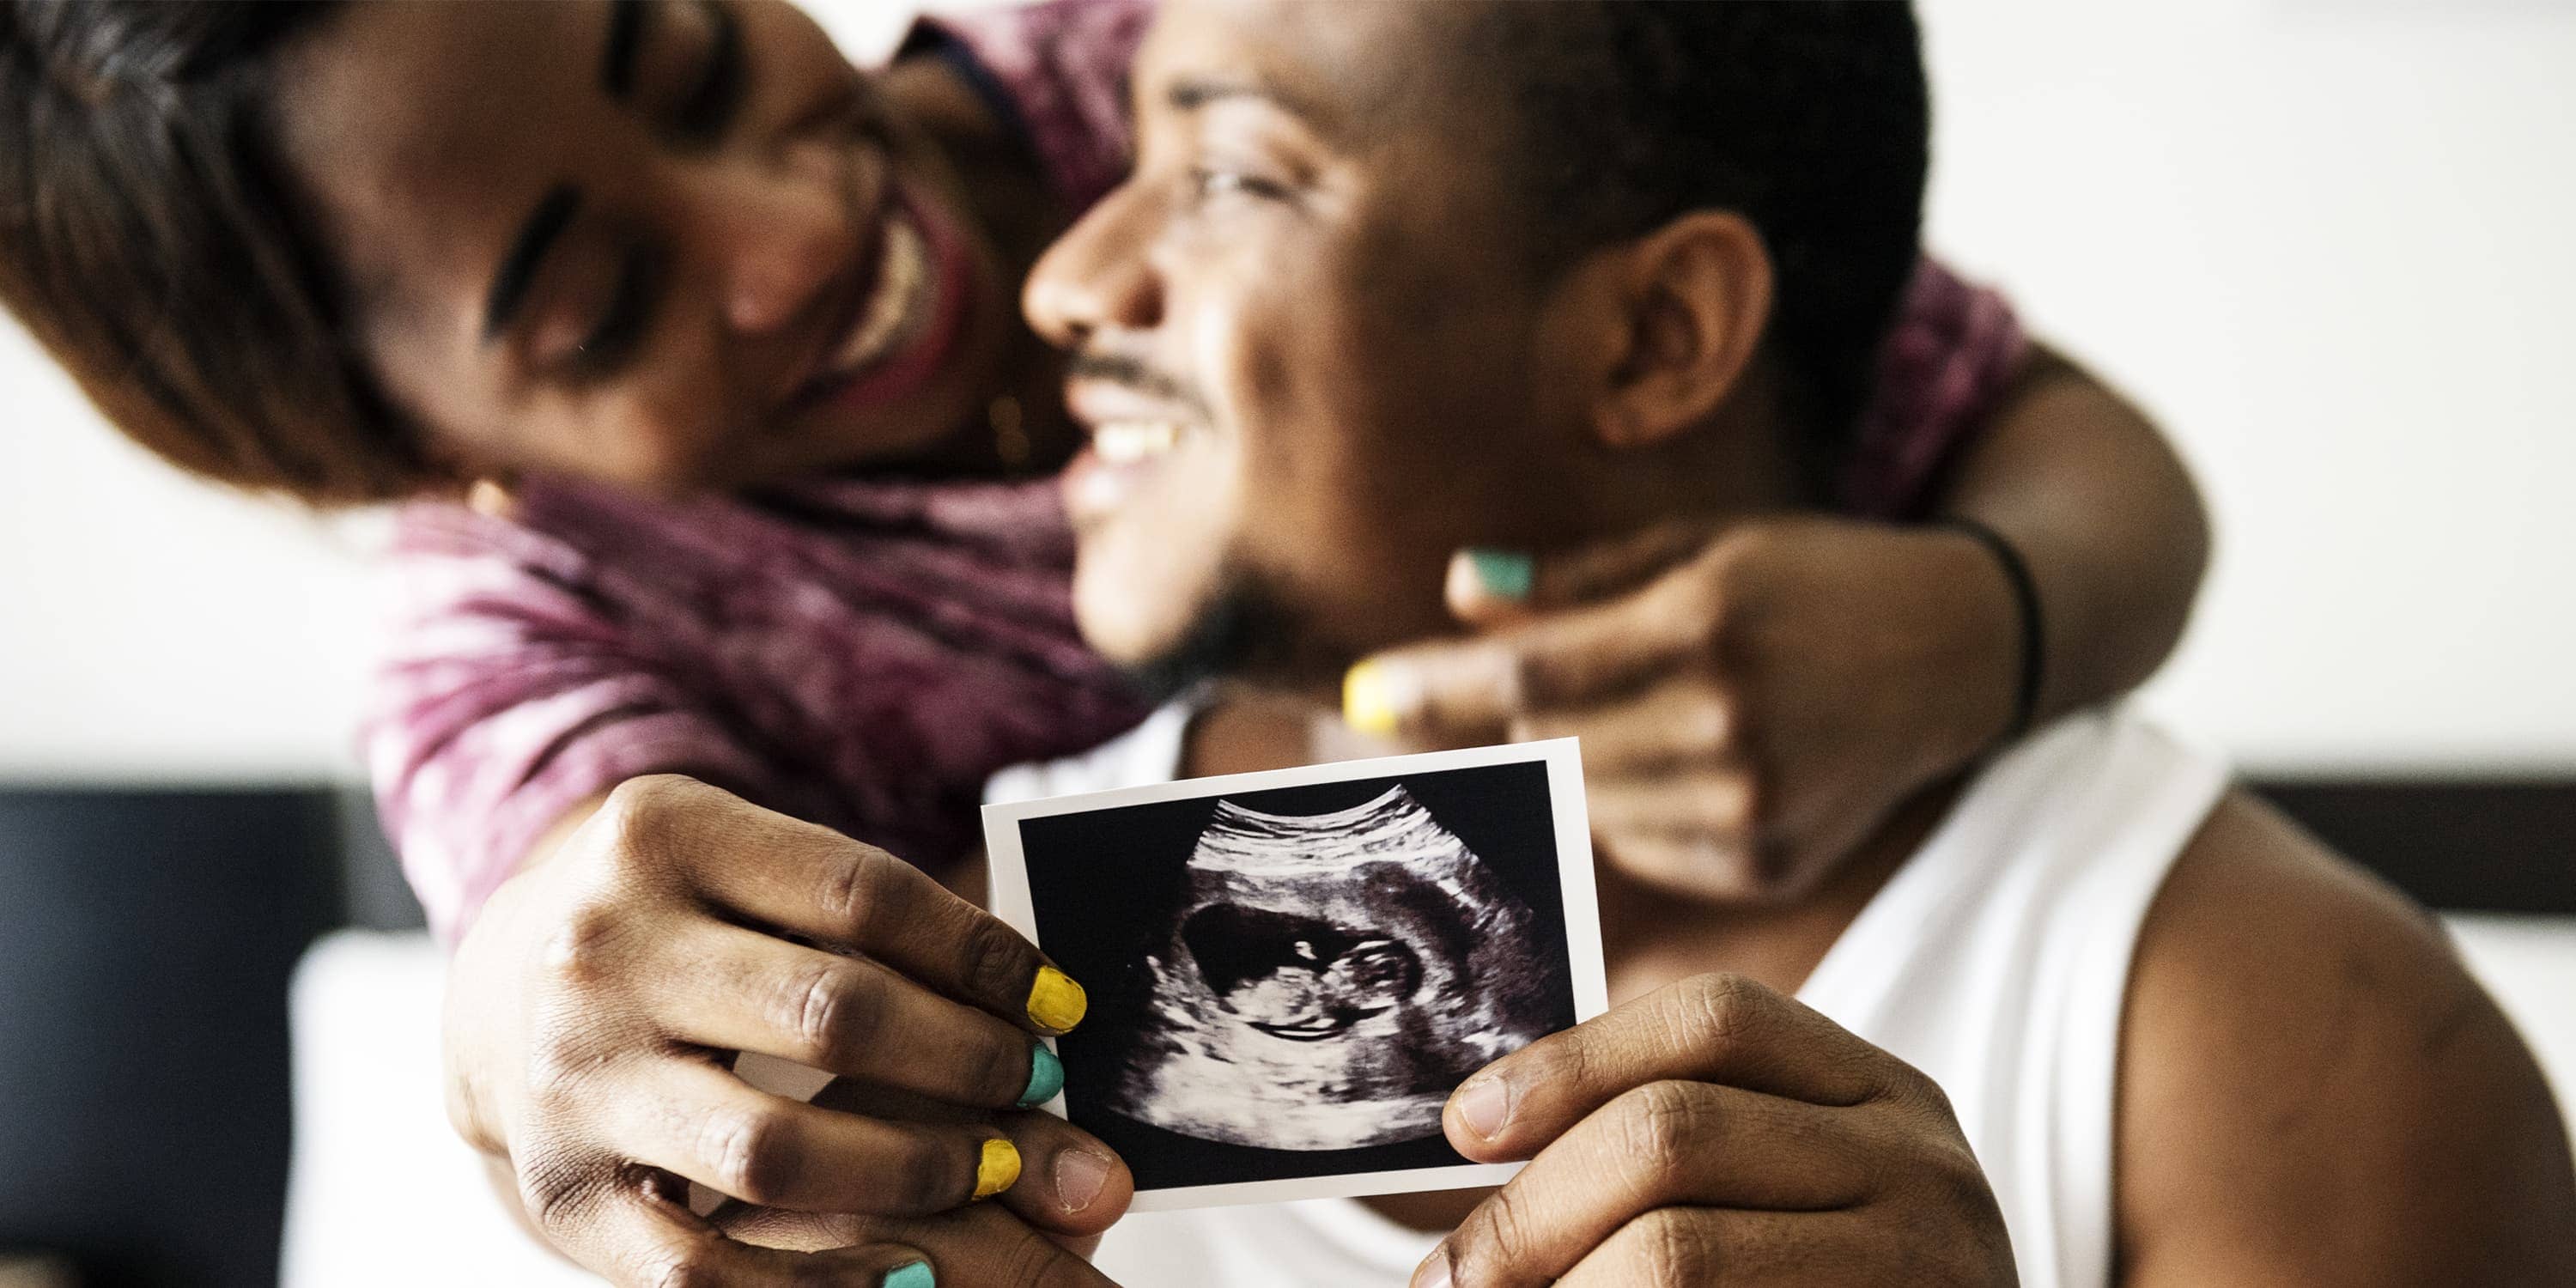 Sort par viser baby på scanningsfoto